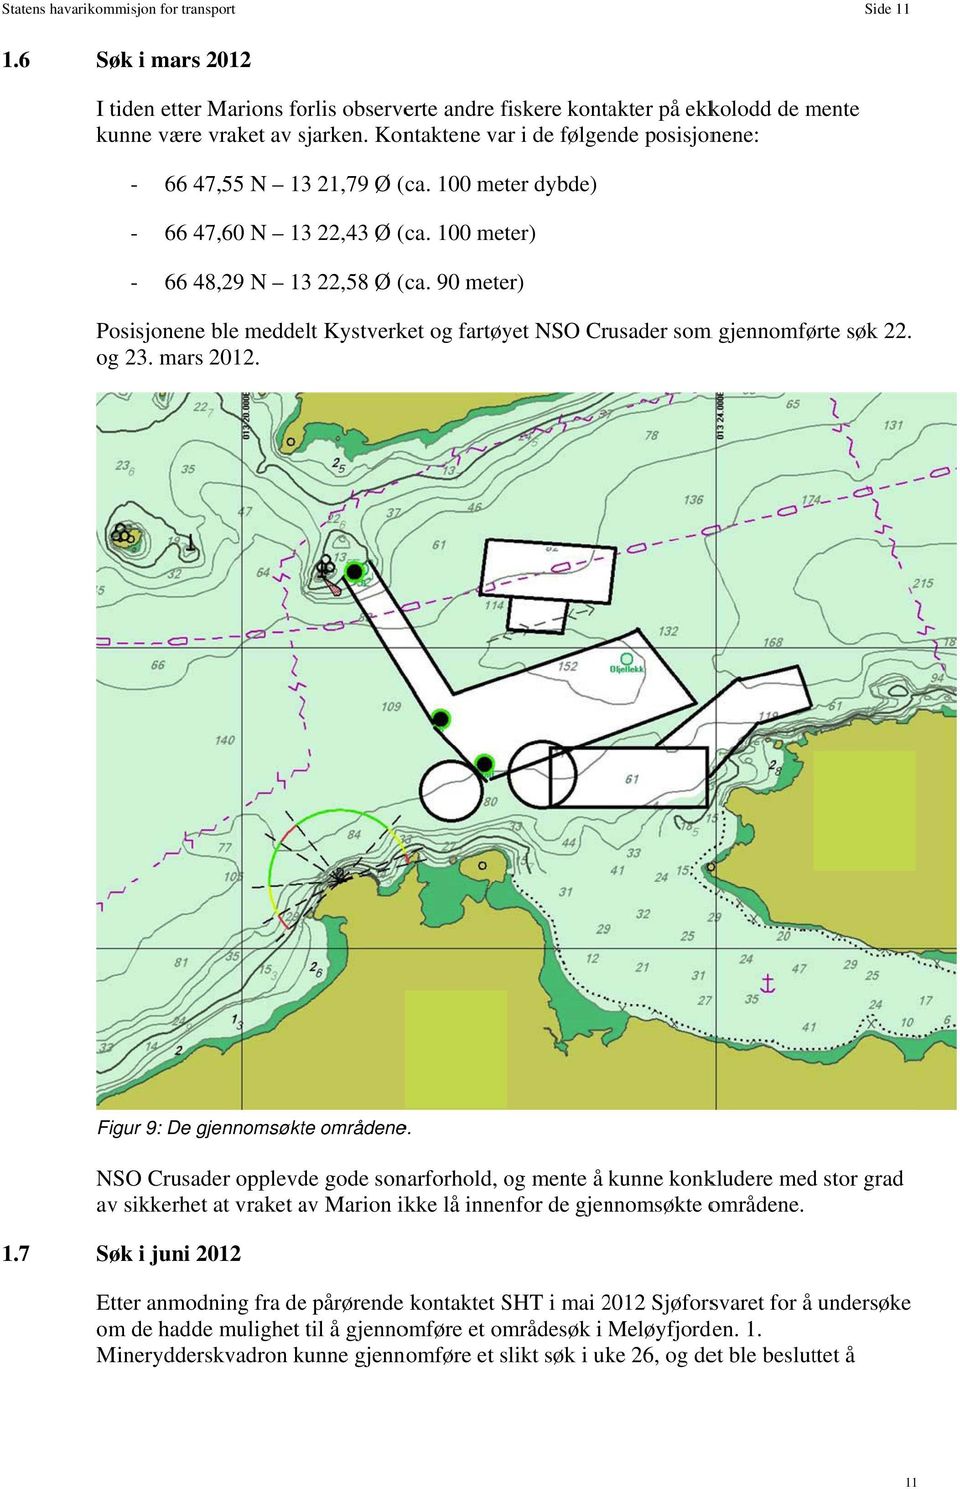 90 meter) Posisjonenee ble meddelt Kystverket og fartøyet NSO Crusader som m gjennomførte søk 22. og 23. mars 2012. Figur 9: De gjennomsøkte områdene.